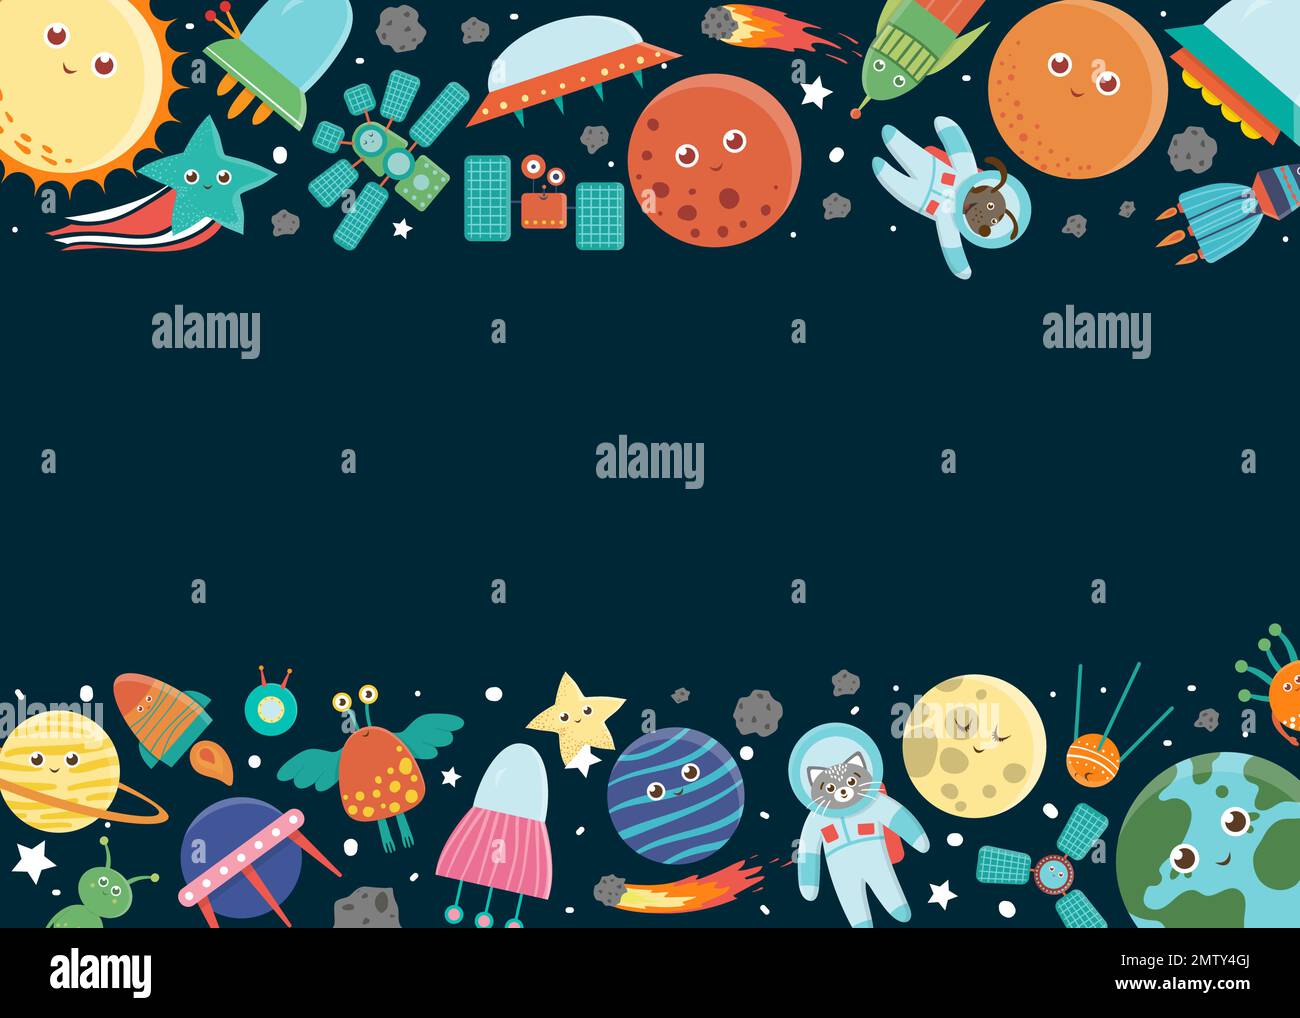 Rahmenvorlage für Vektorraum. Horizontales Grenzbanner mit Galaxie, Sternen, Planeten, Rakete für Kinder. Süße flache Illustration Stock Vektor